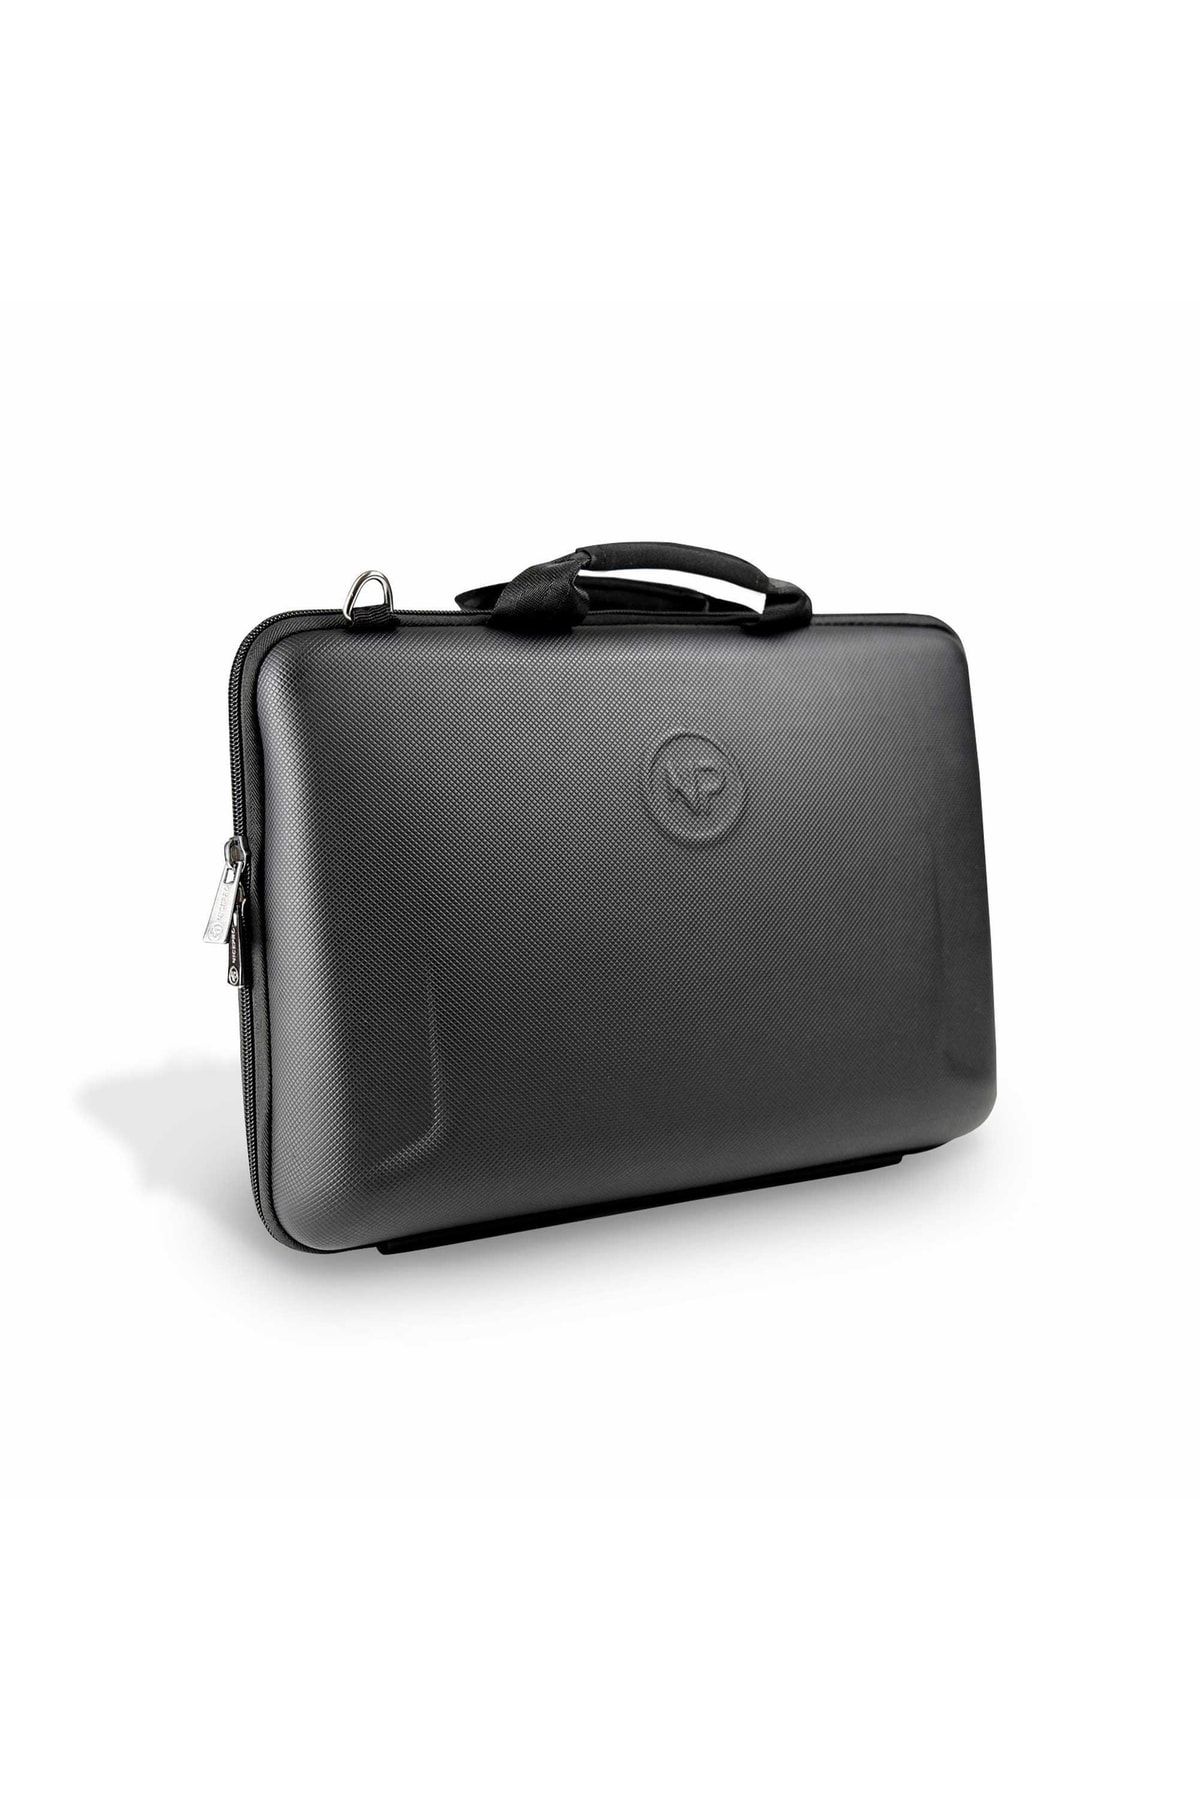 NPO Apex 14" Macbook Ve Ipad Uyumlu,ultra Korumalı Probag Notebook Çantası-siyah